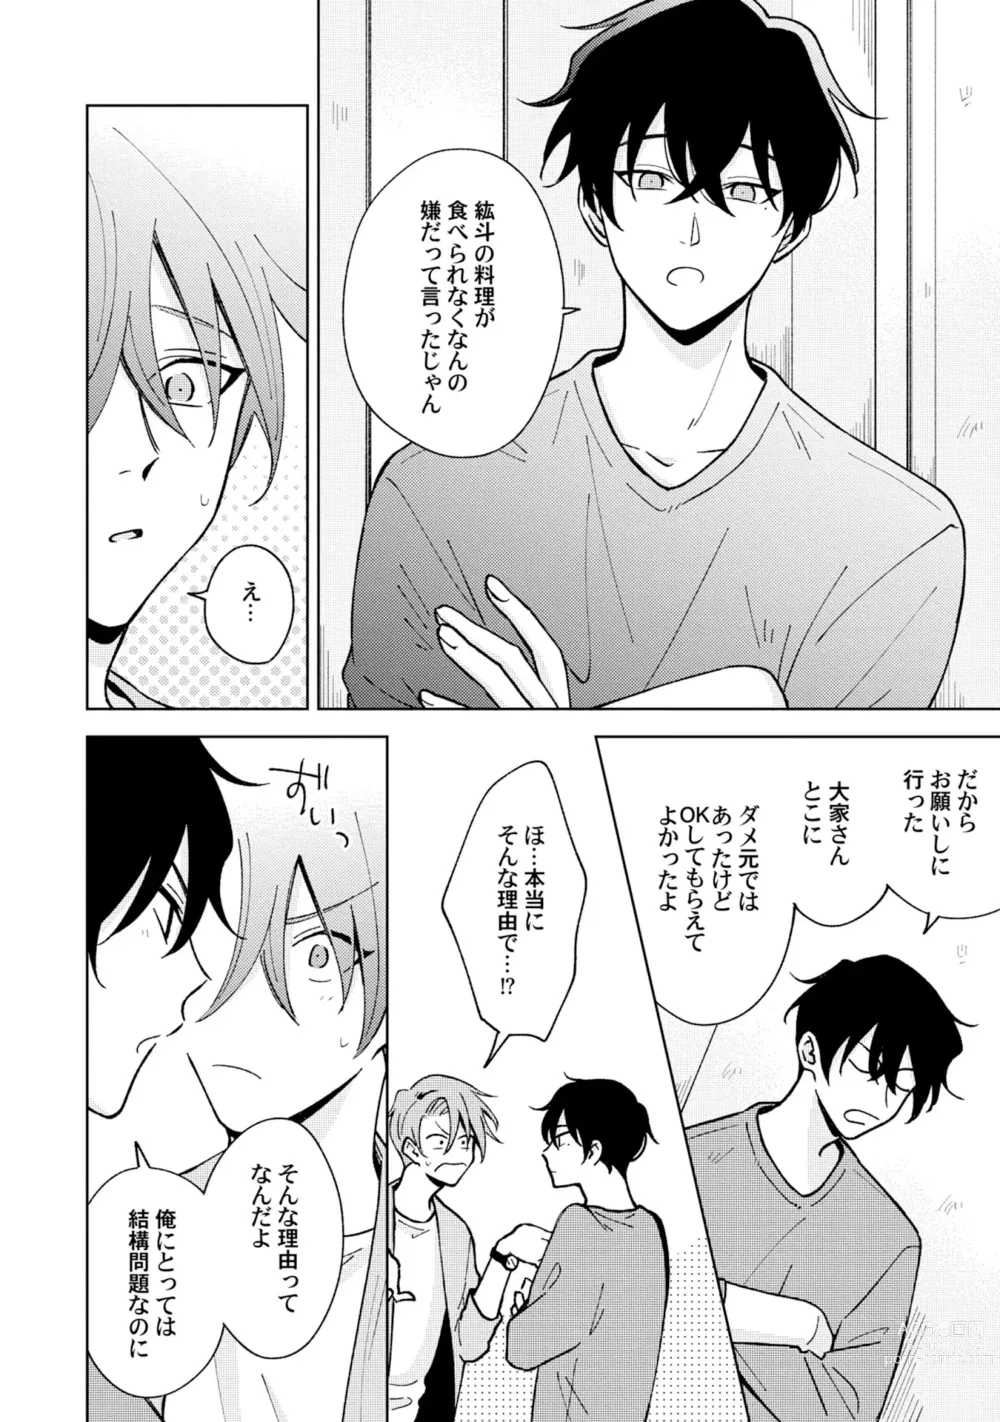 Page 18 of manga Toho 3-byou no Trouble Love Room 5